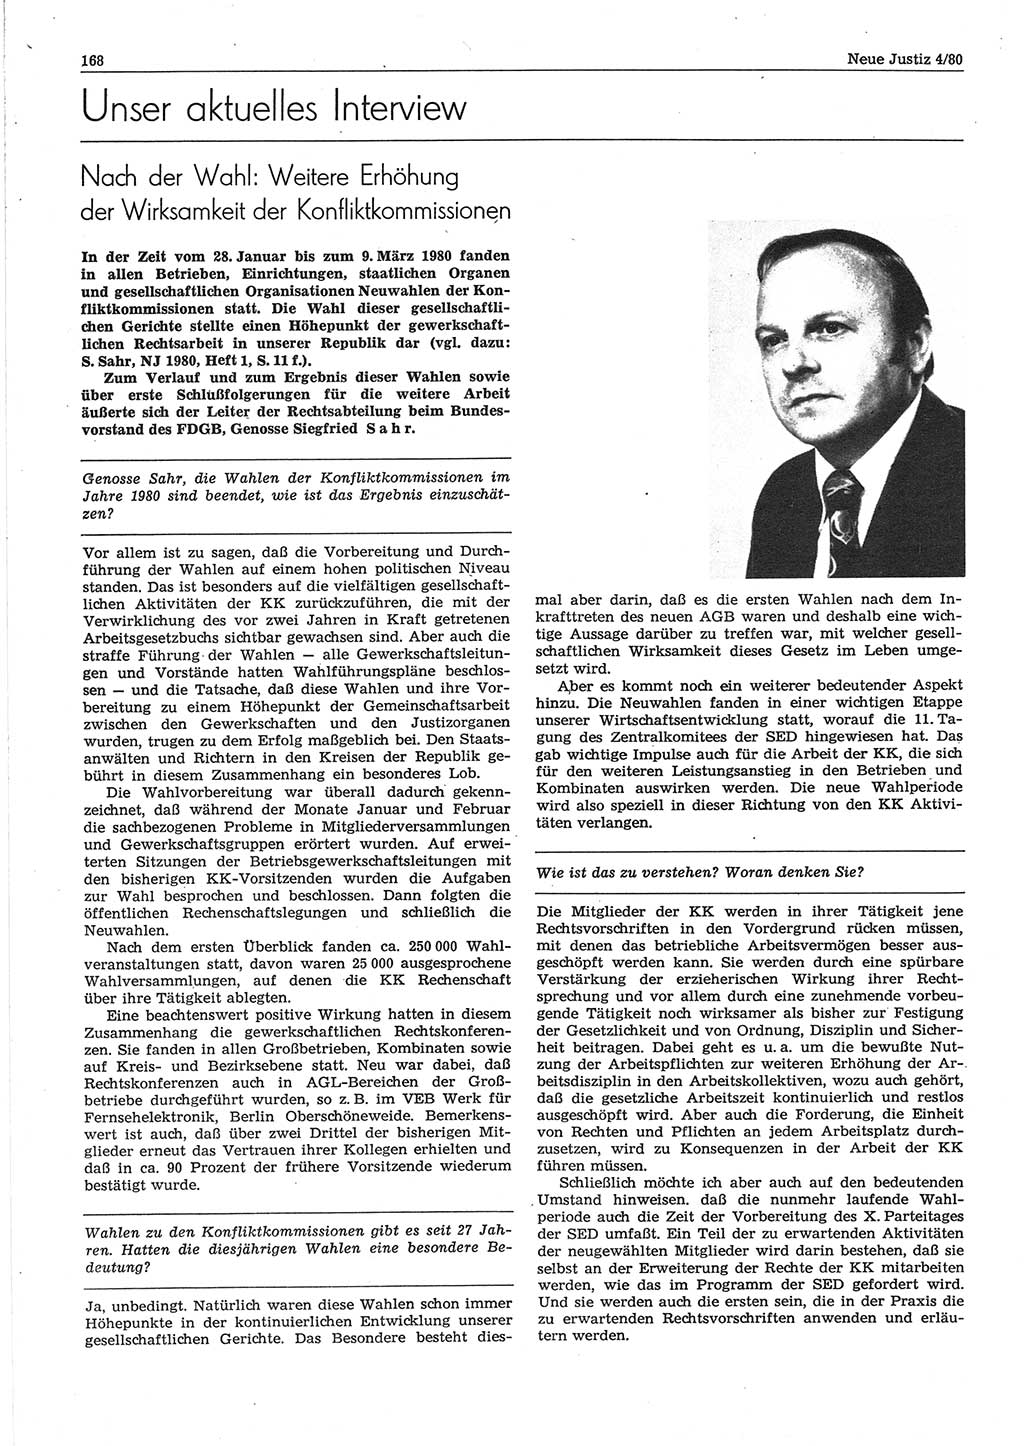 Neue Justiz (NJ), Zeitschrift für sozialistisches Recht und Gesetzlichkeit [Deutsche Demokratische Republik (DDR)], 34. Jahrgang 1980, Seite 168 (NJ DDR 1980, S. 168)